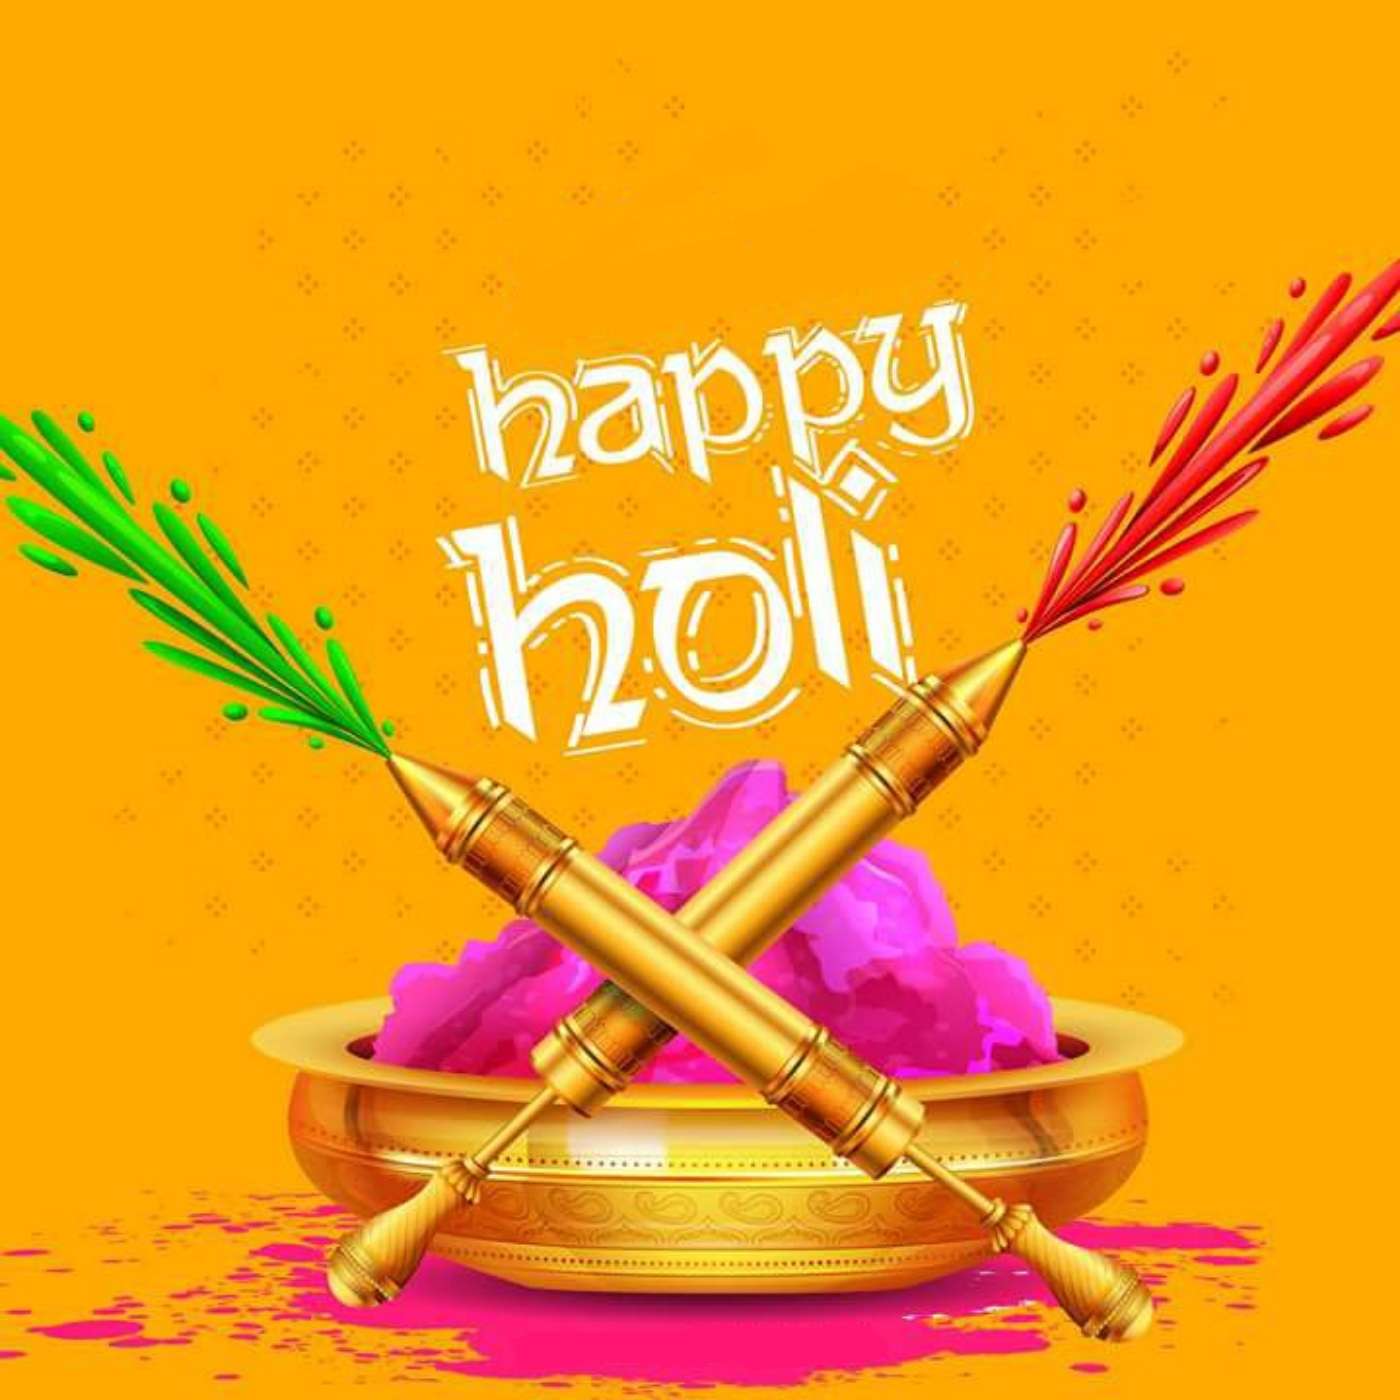 Happy Holi Photo Download